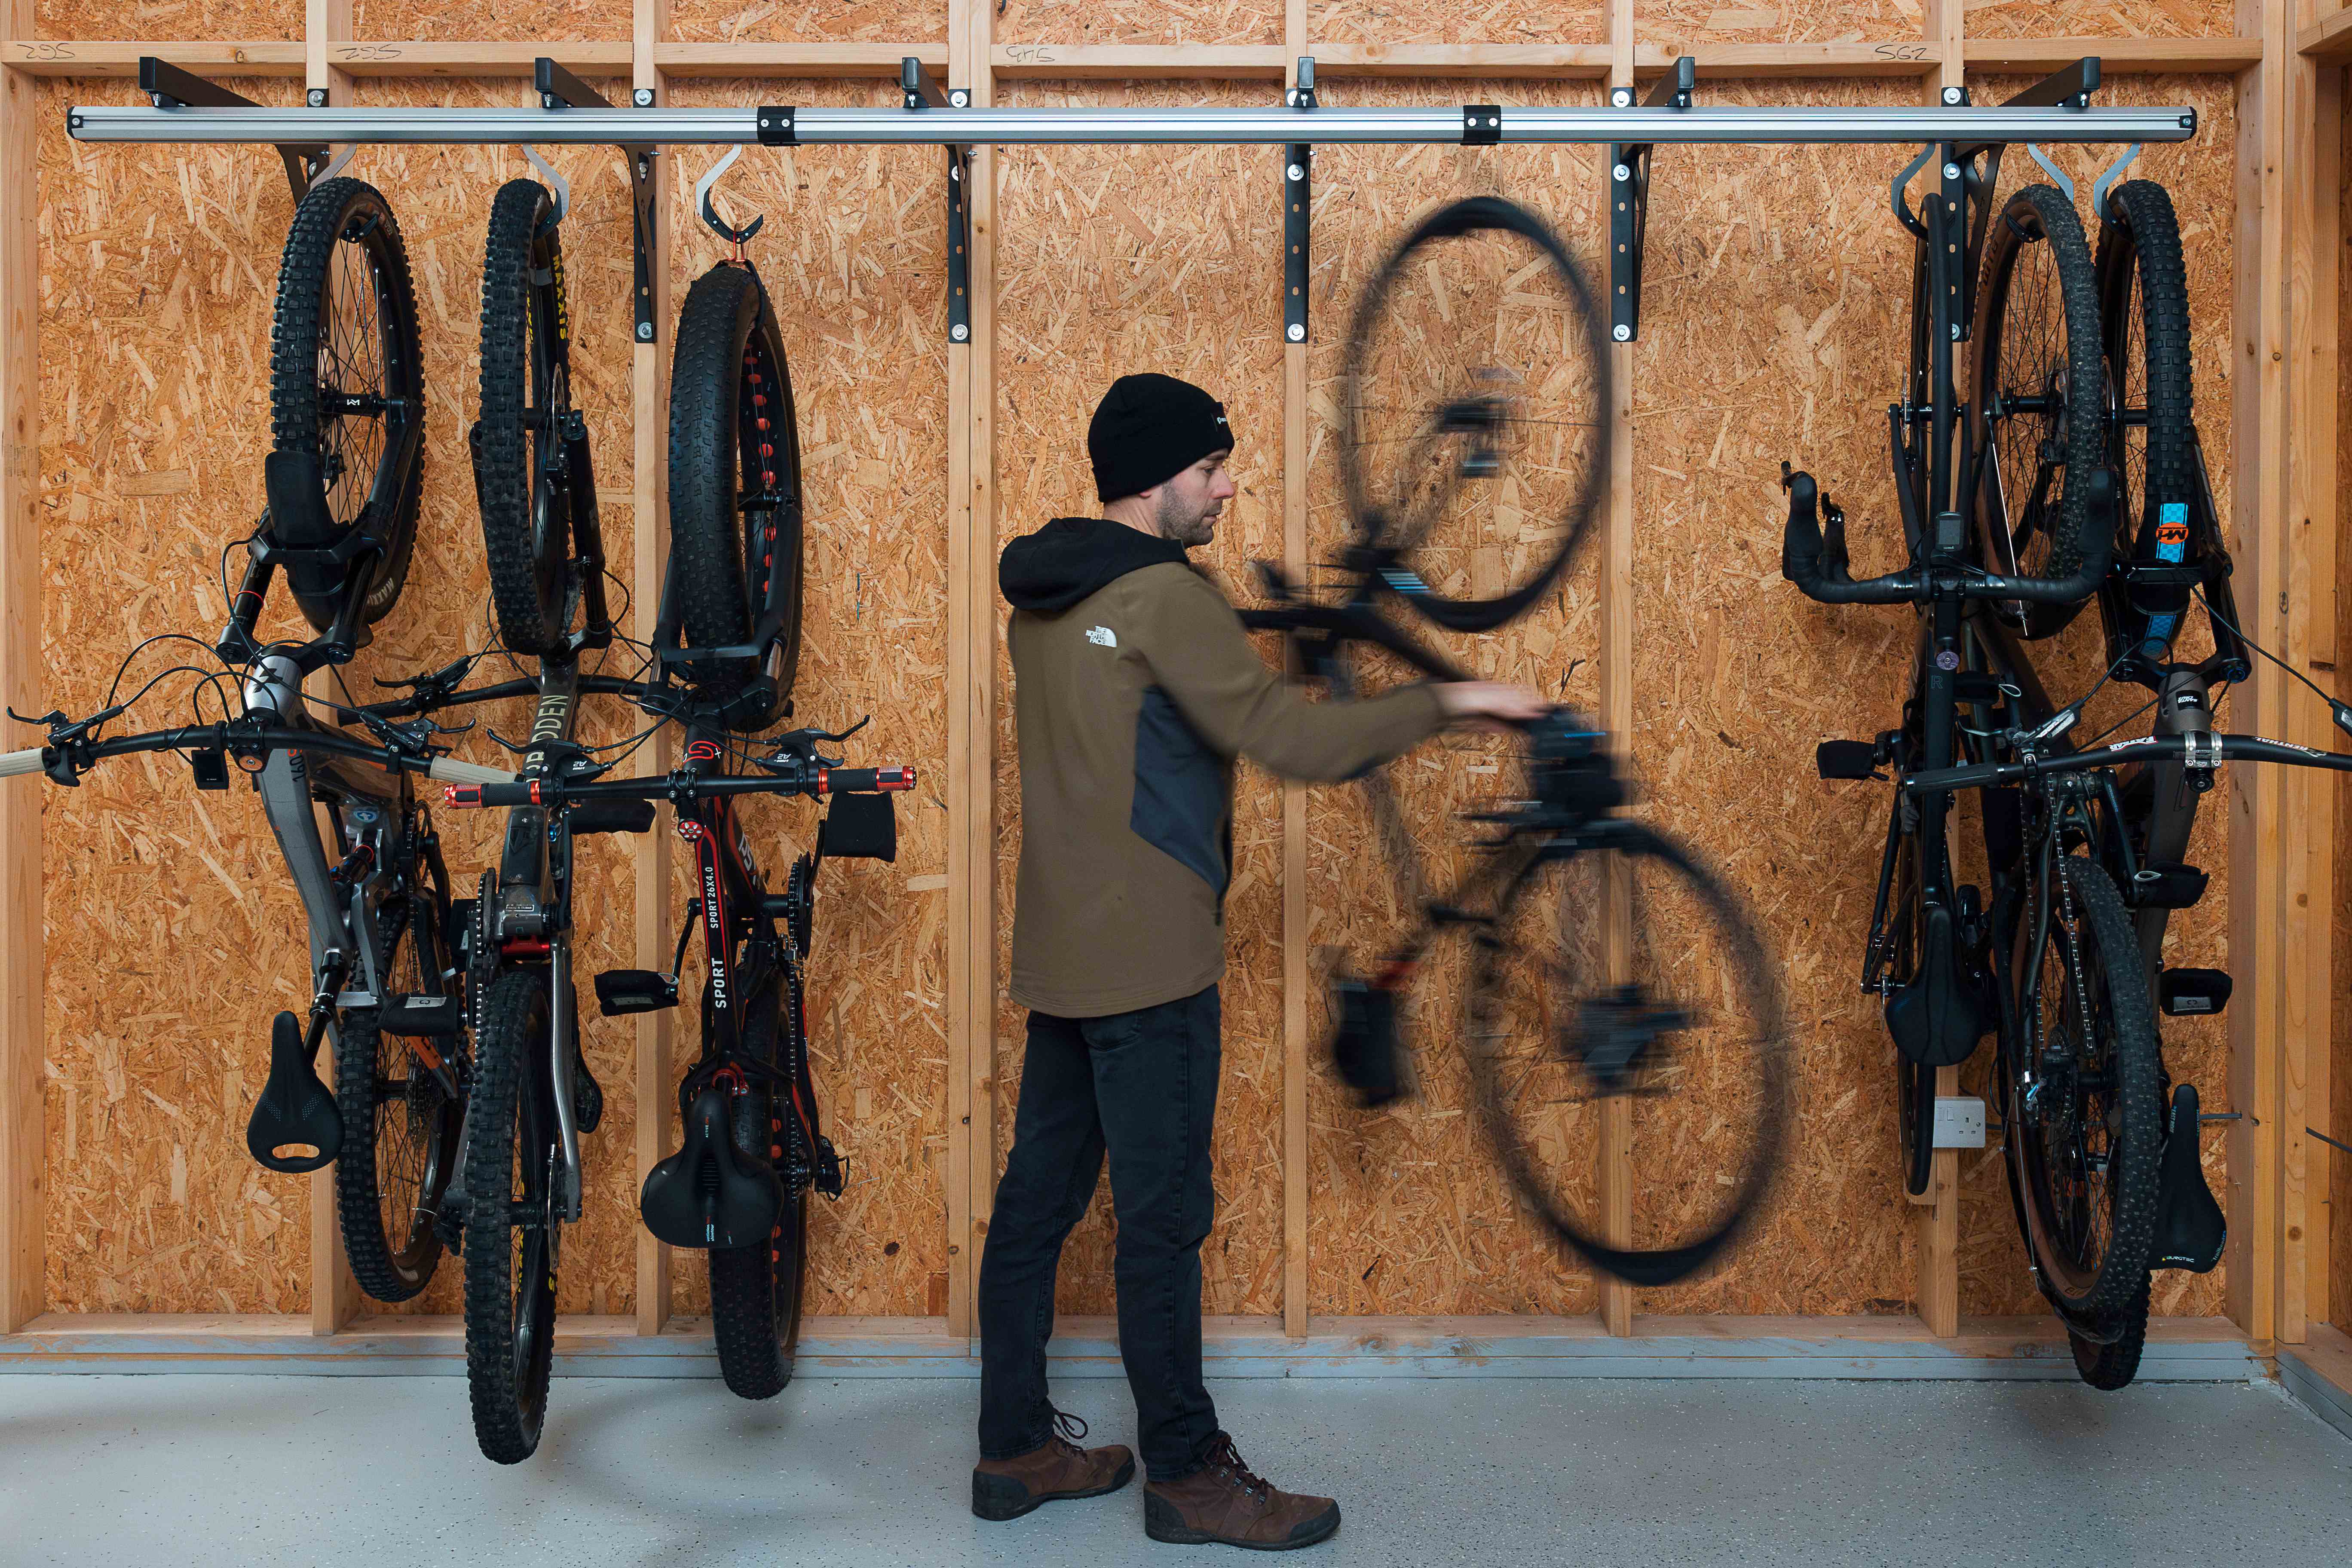 Comment ranger efficacement vos vélos dans le garage